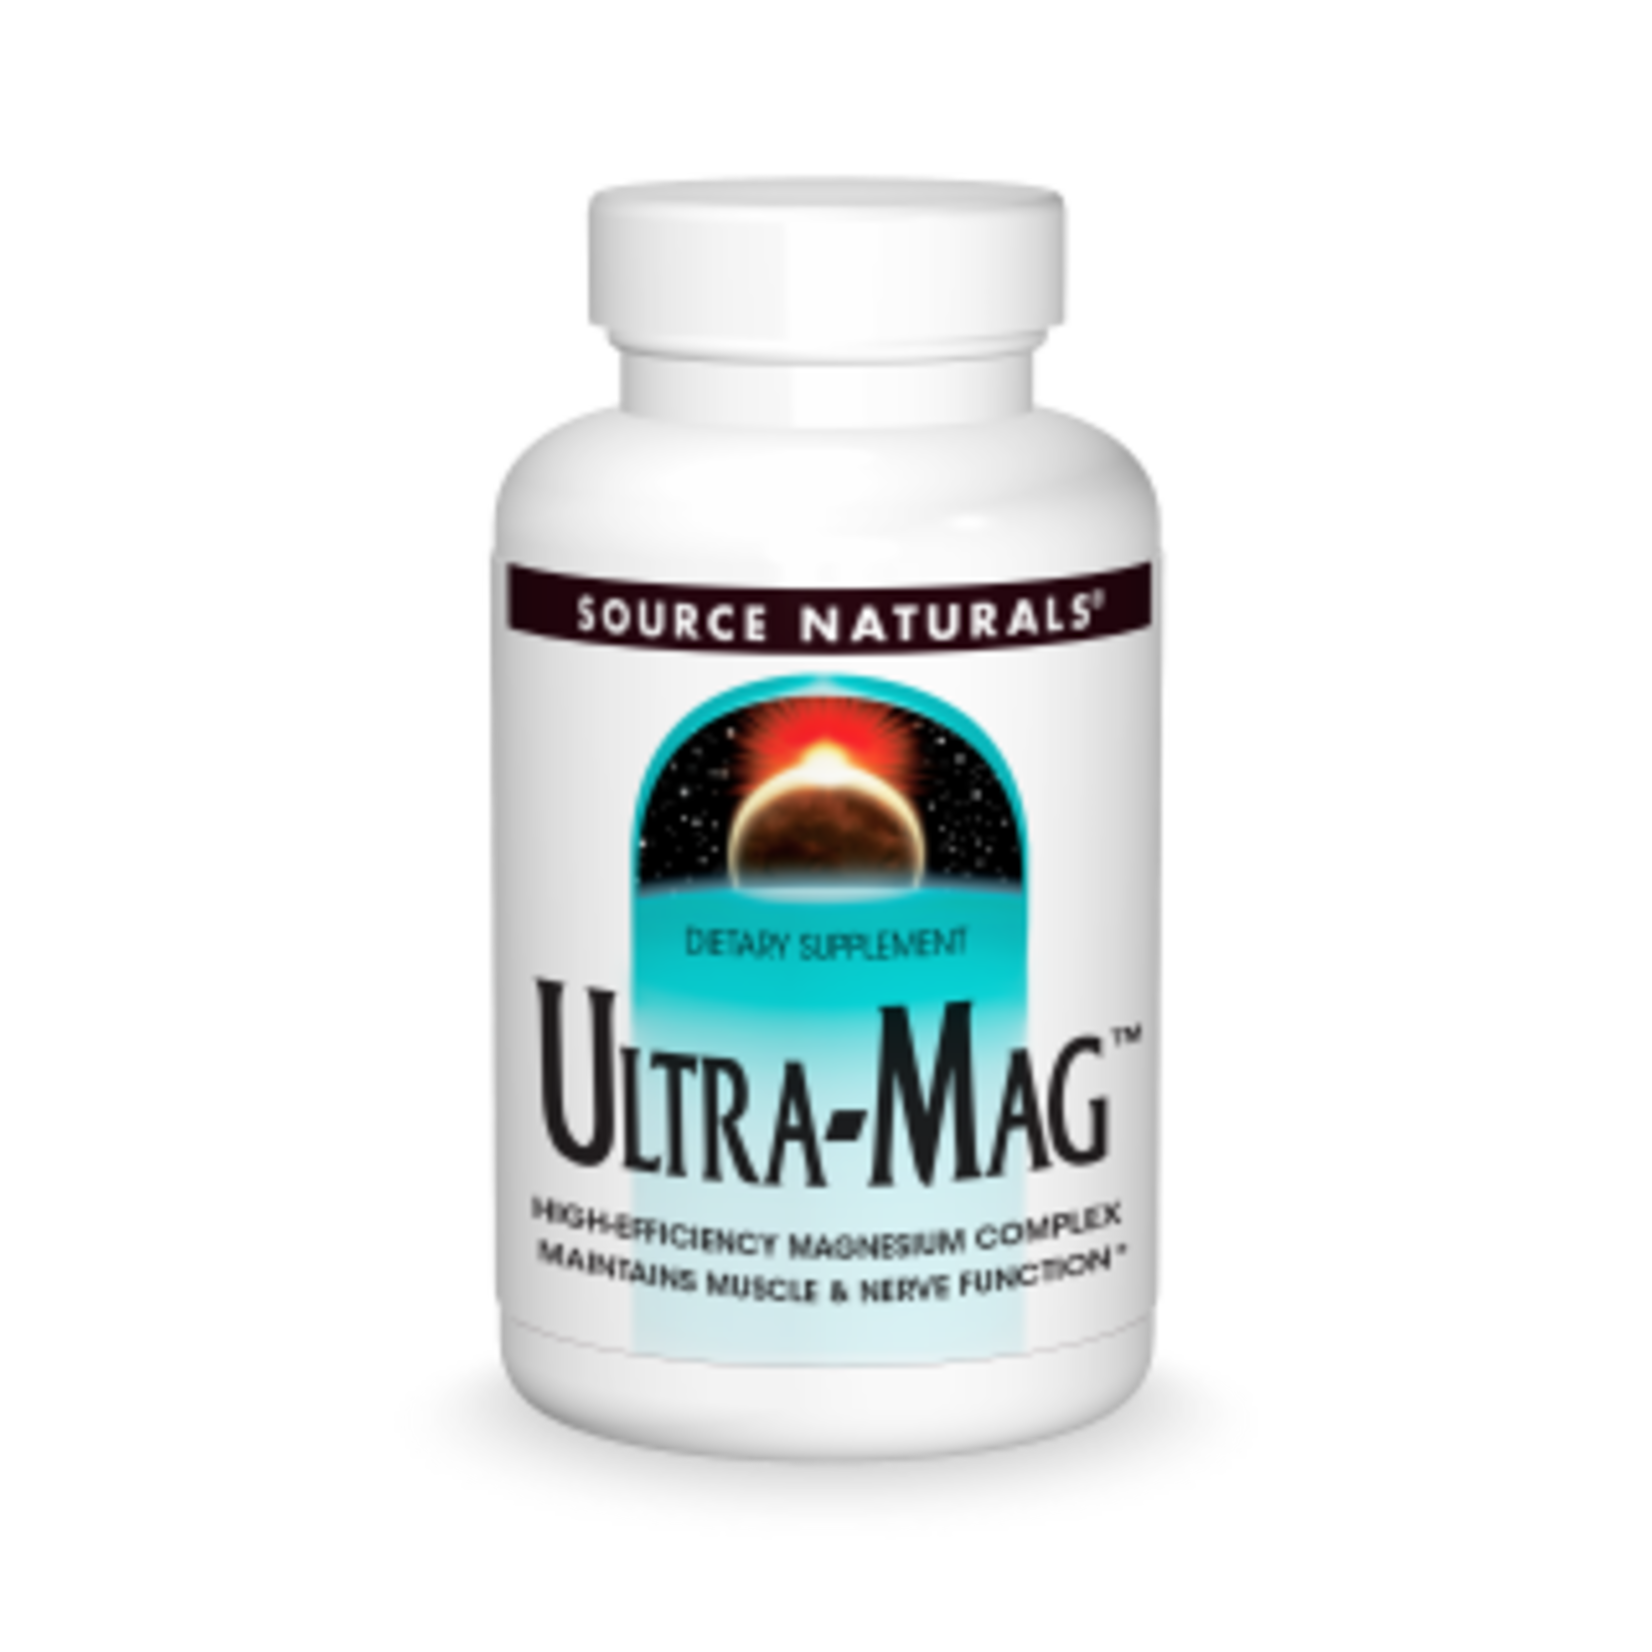 Source Naturals Source Naturals - Ultra-Mag - 240 Tablets